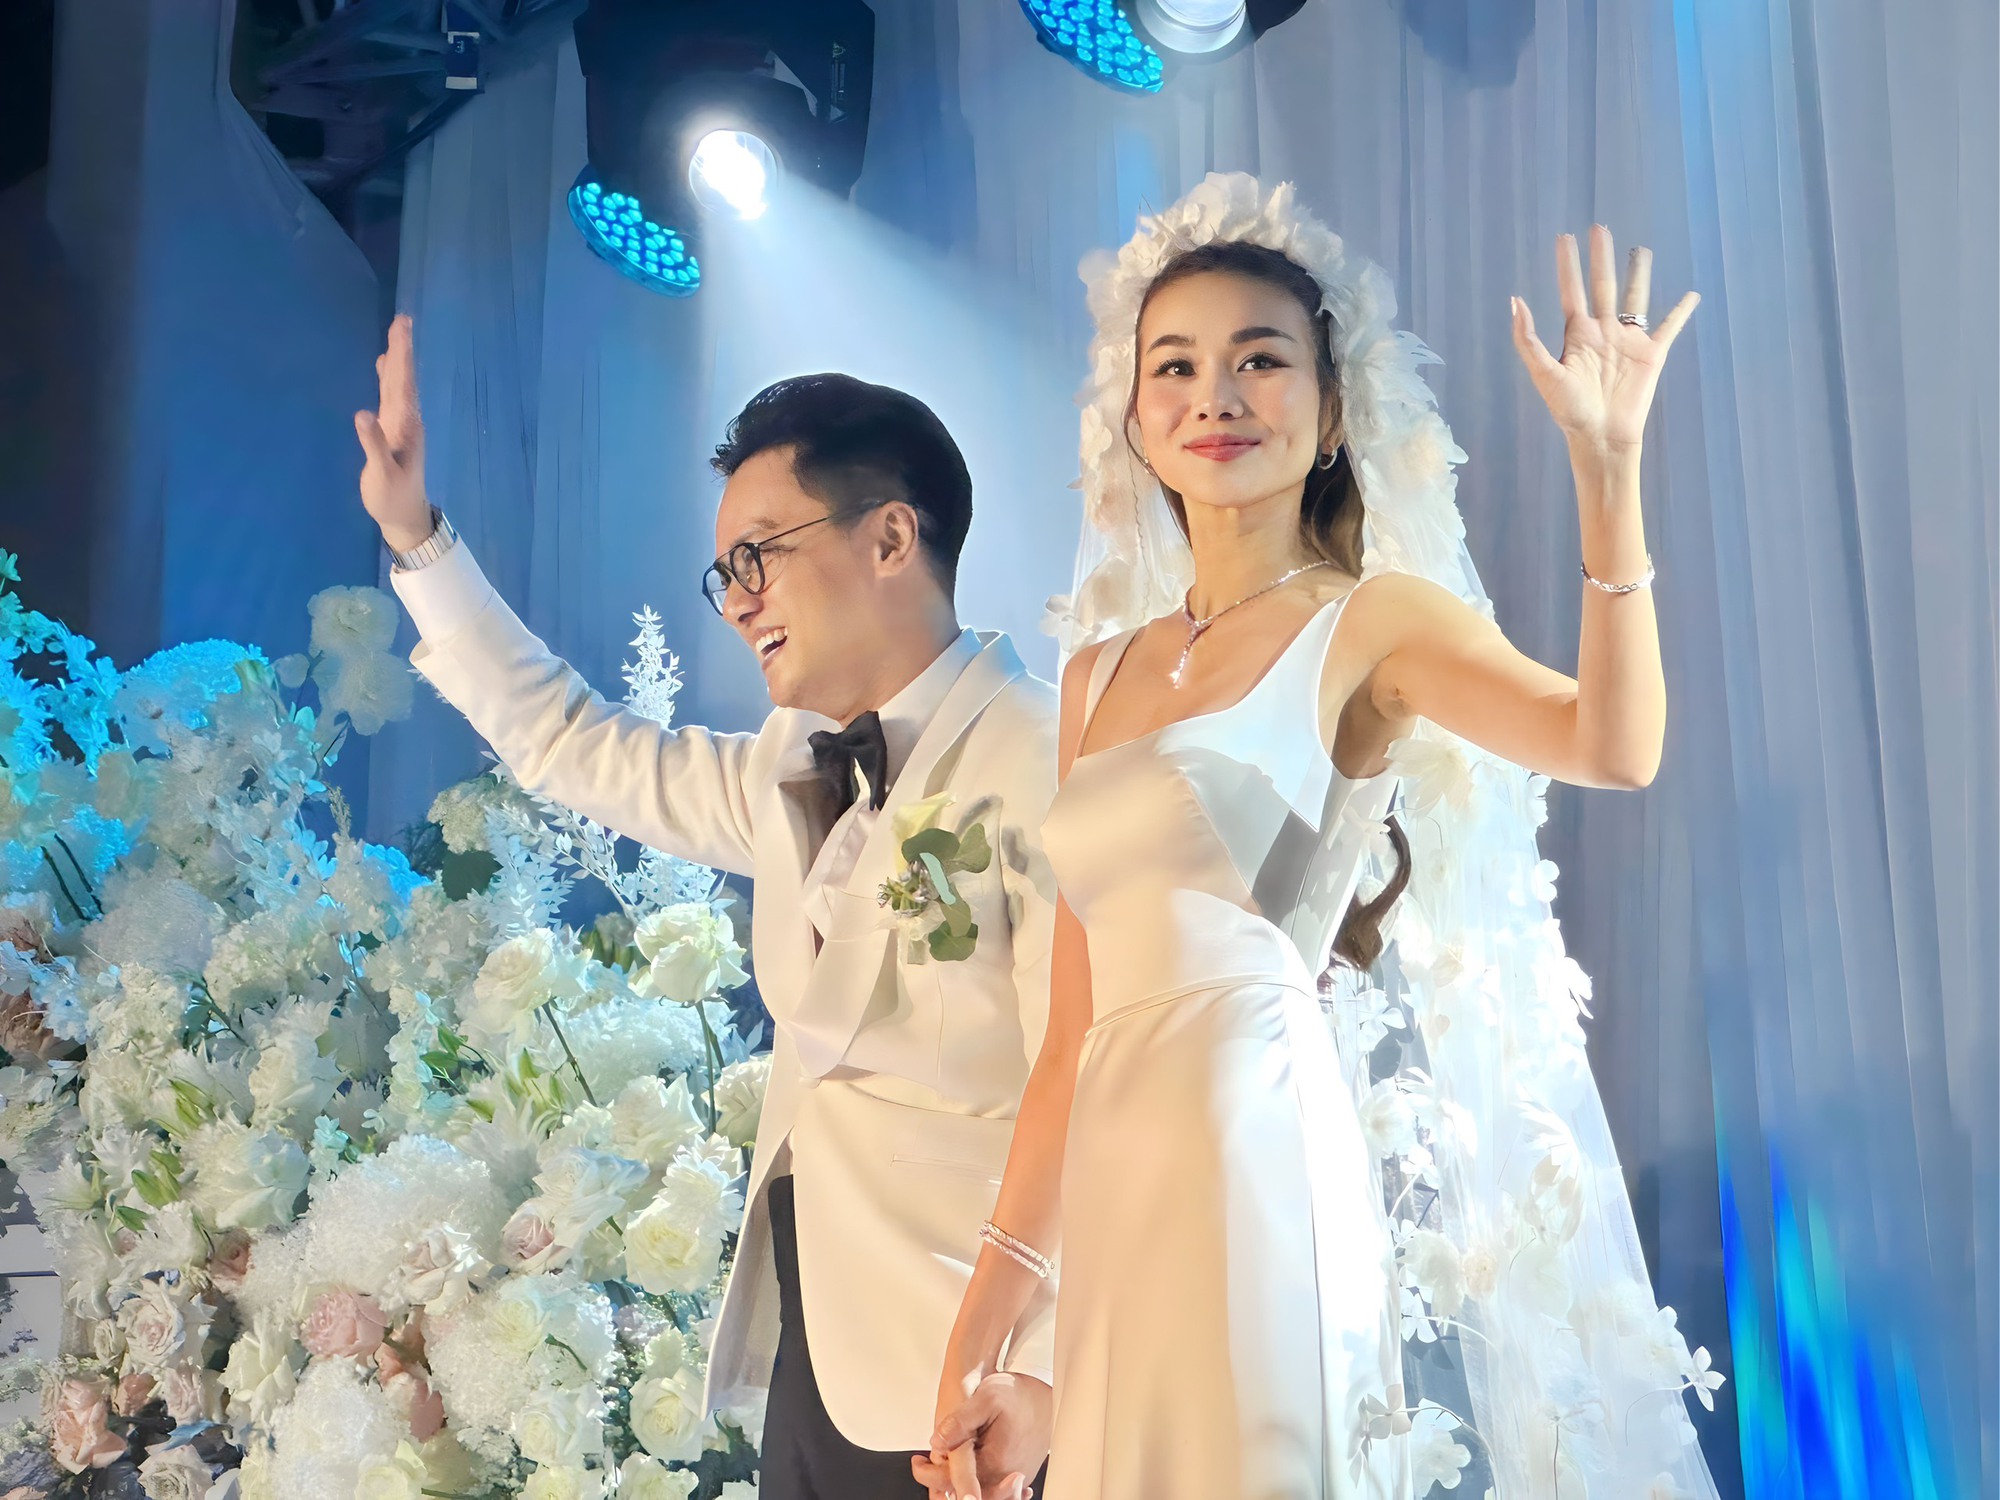 Siêu mẫu Thanh Hằng đeo trang sức hơn 10 tỉ đồng trong đám cưới - Ảnh 1.